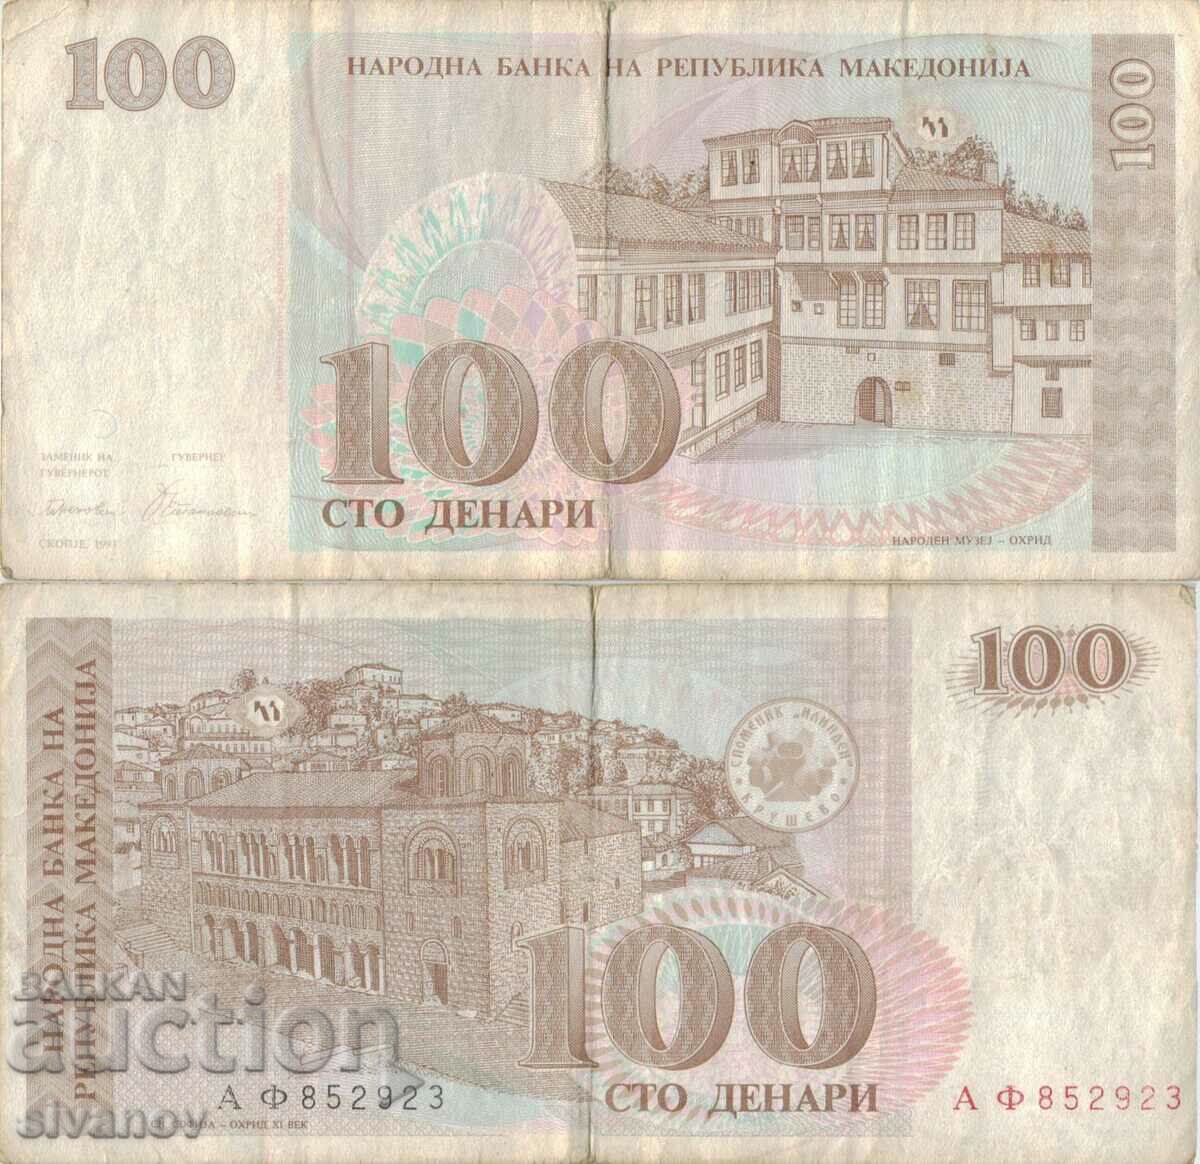 Macedonia 100 denars 1993 banknote #5221